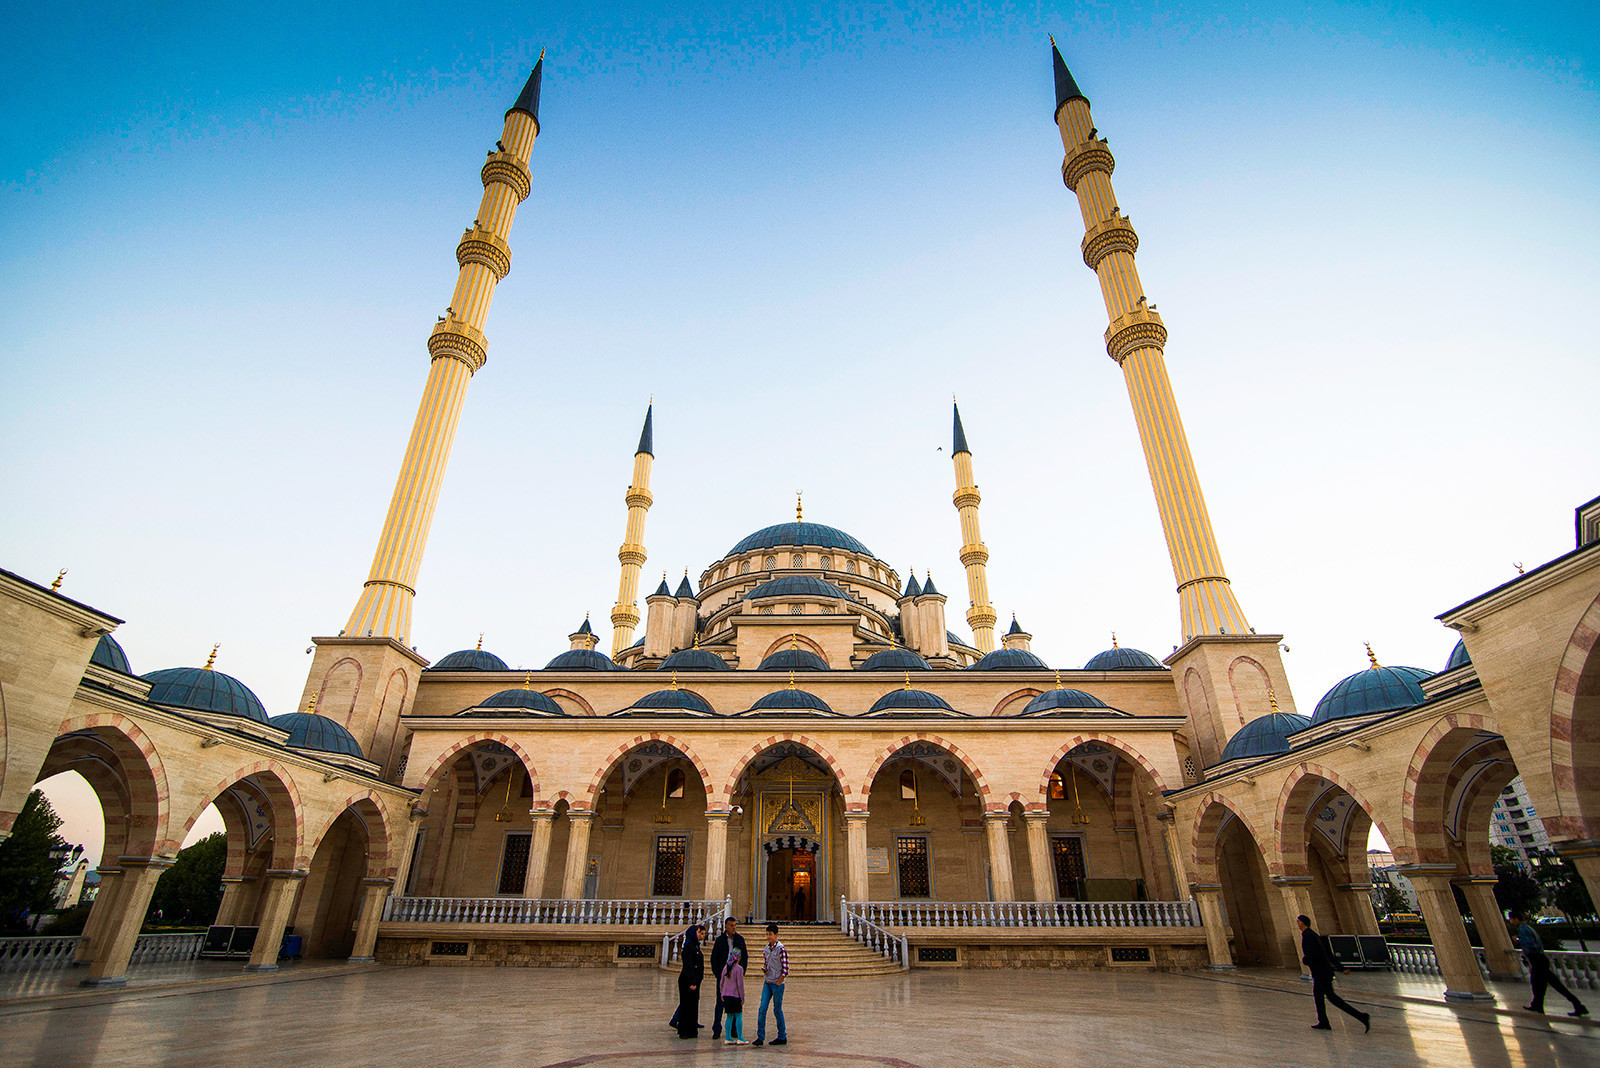 џамија Срце Чеченије